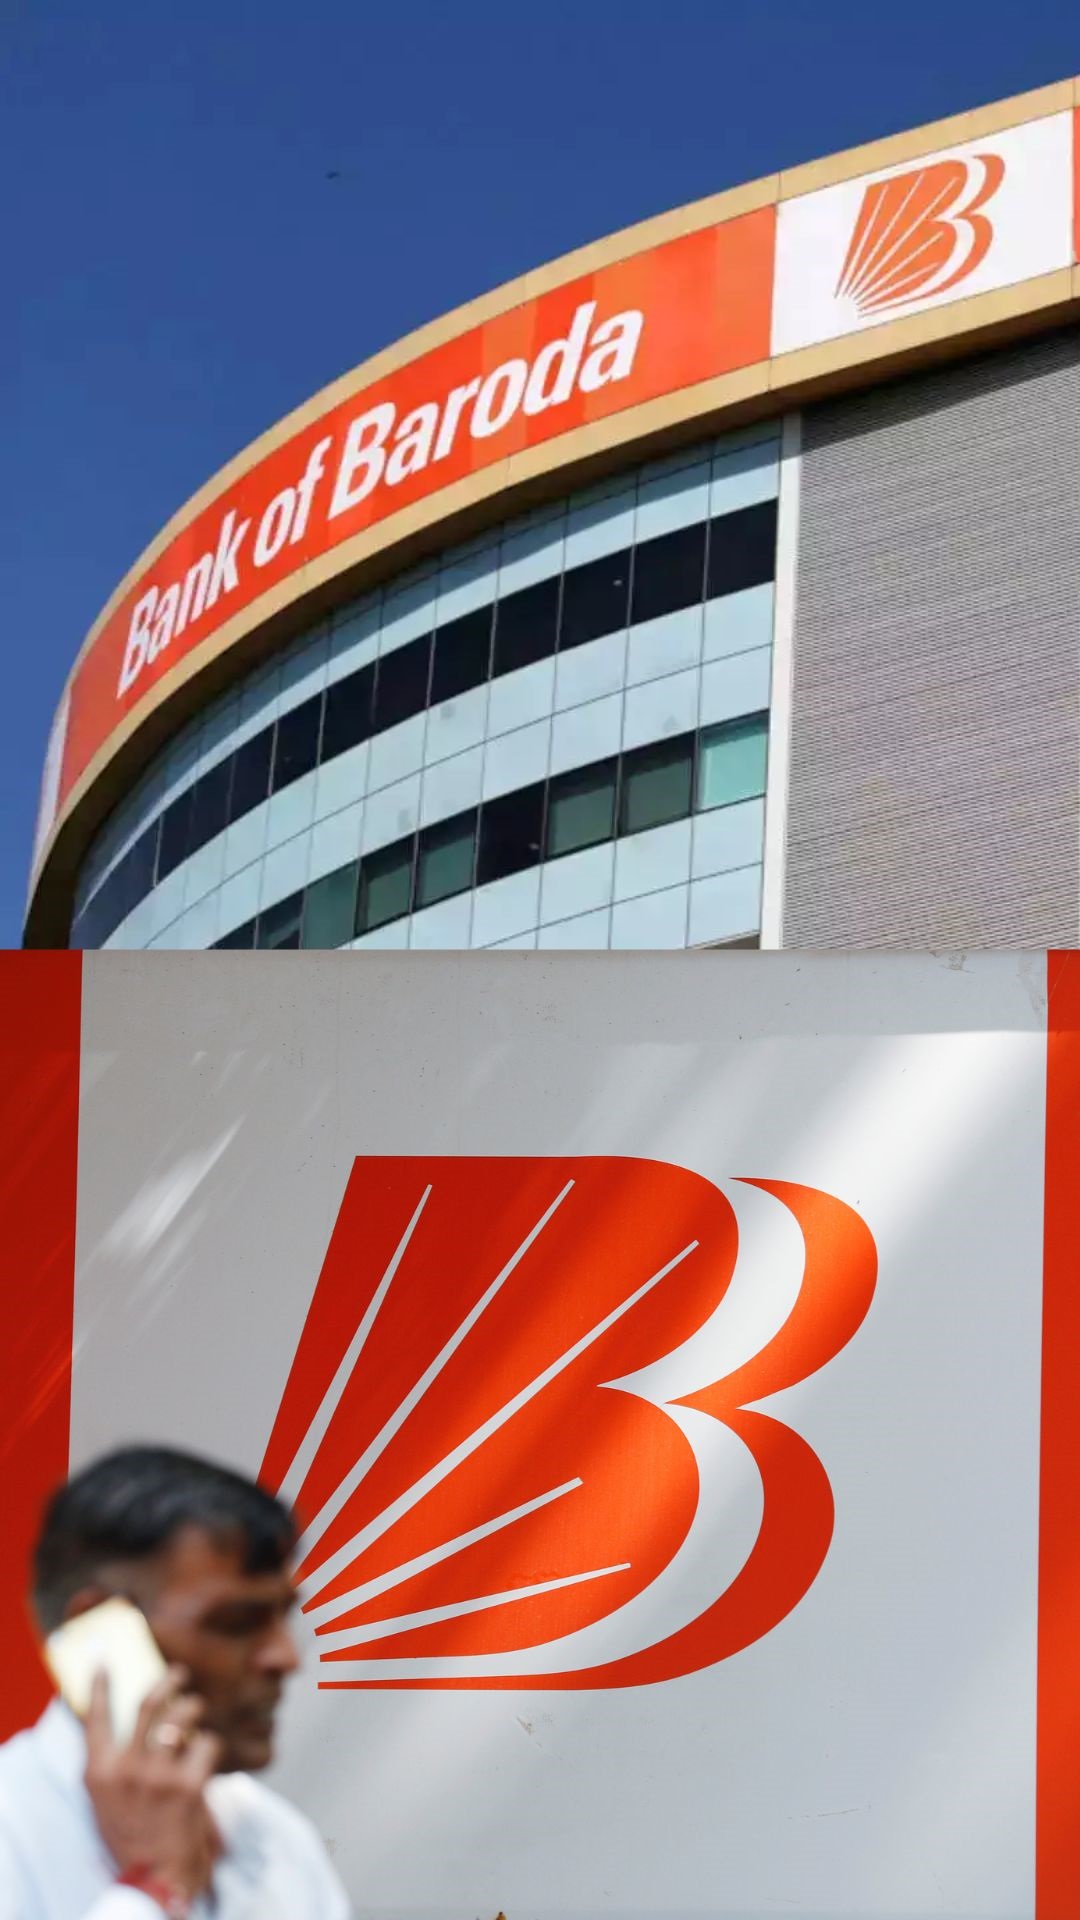 Bank of Baroda की 399 दिनों की इस स्पेशल स्कीम में ₹3,99,999 लाख निवेश पर मेच्योरिटी अमाउंट कितना बनेगा?